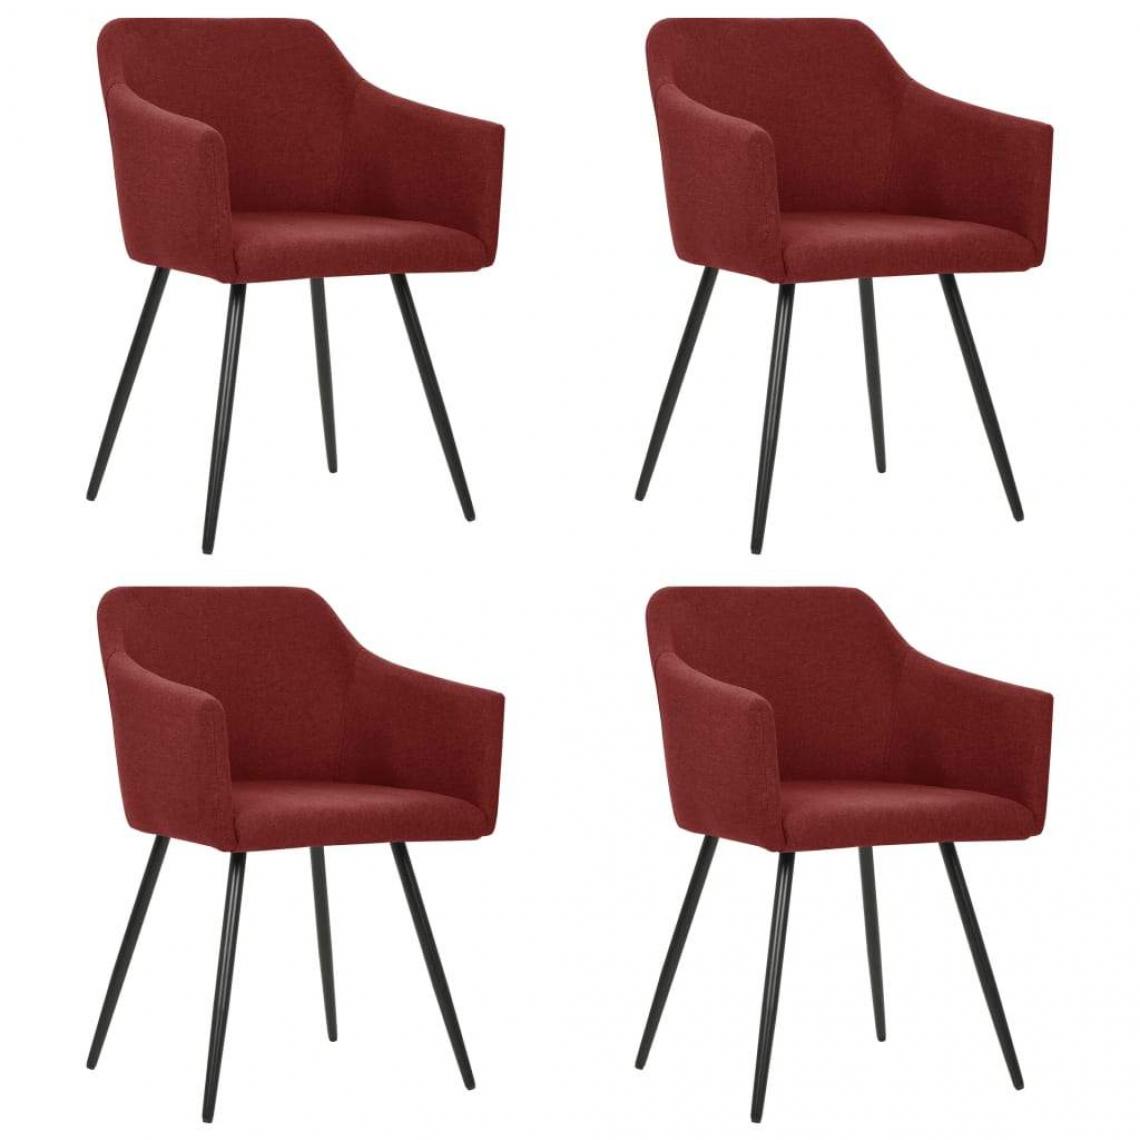 Decoshop26 - Lot de 4 chaises de salle à manger cuisine design rétro tissu rouge bordeaux CDS021950 - Chaises